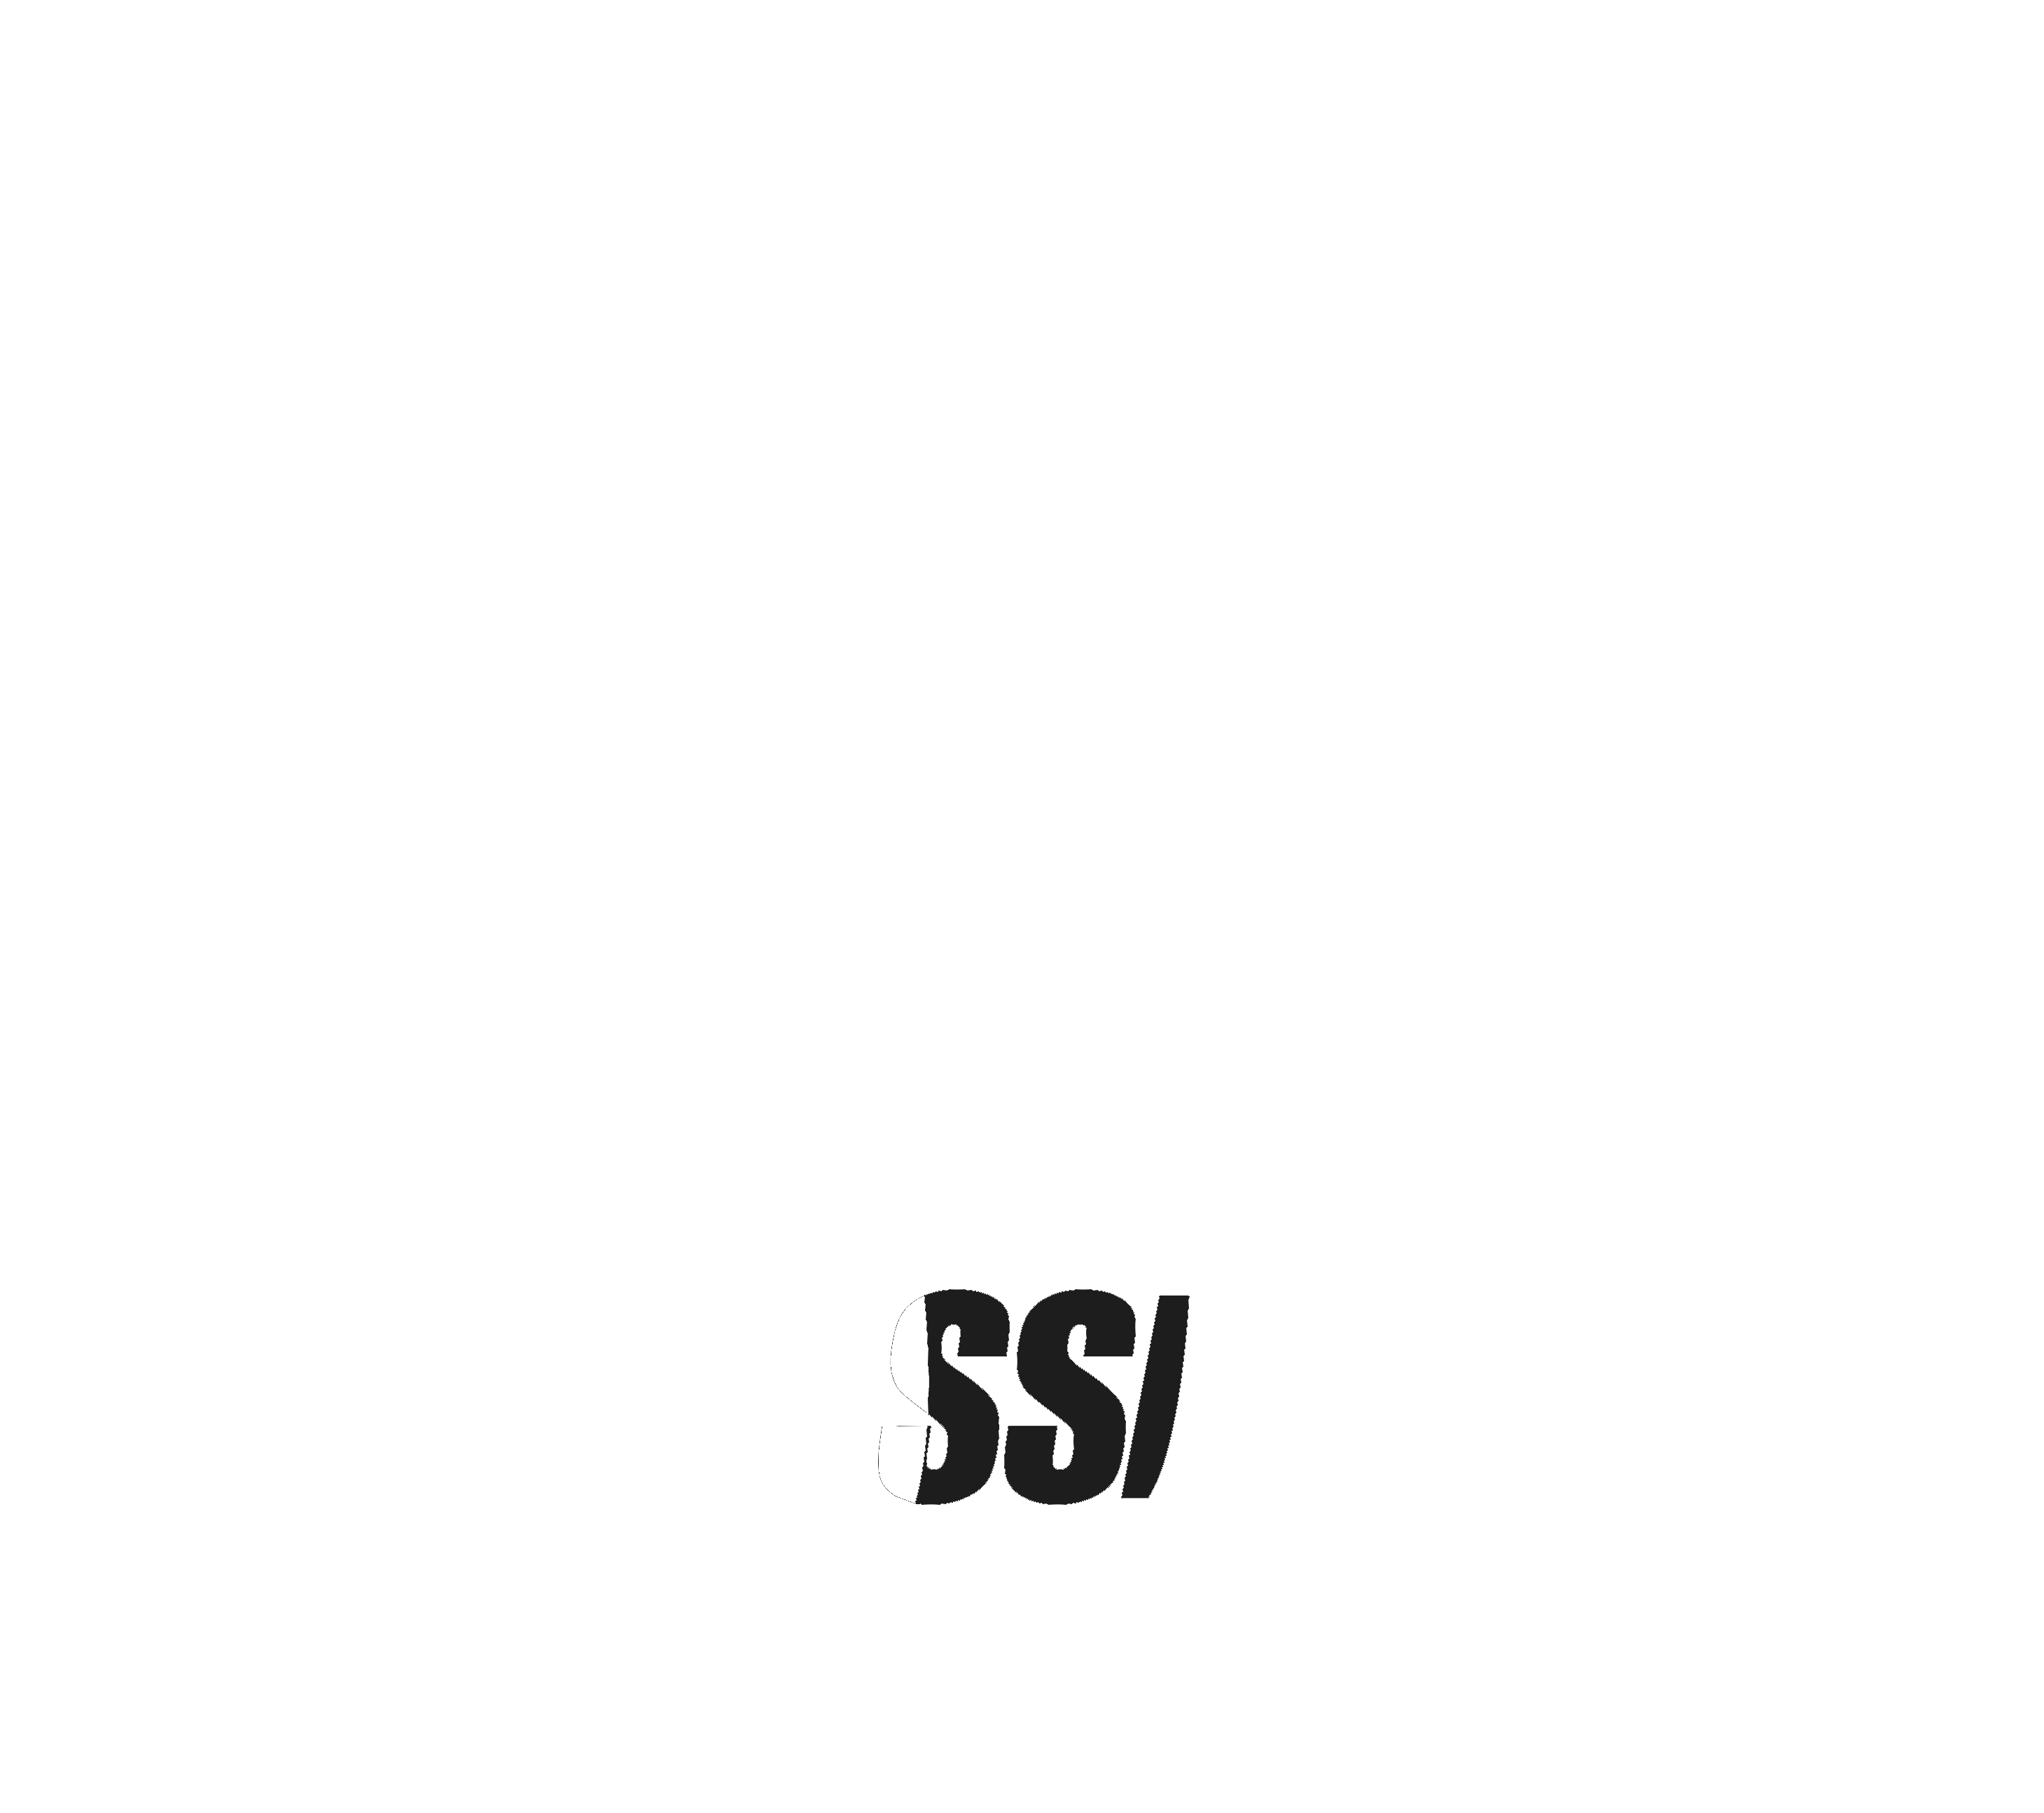 DJ Classick